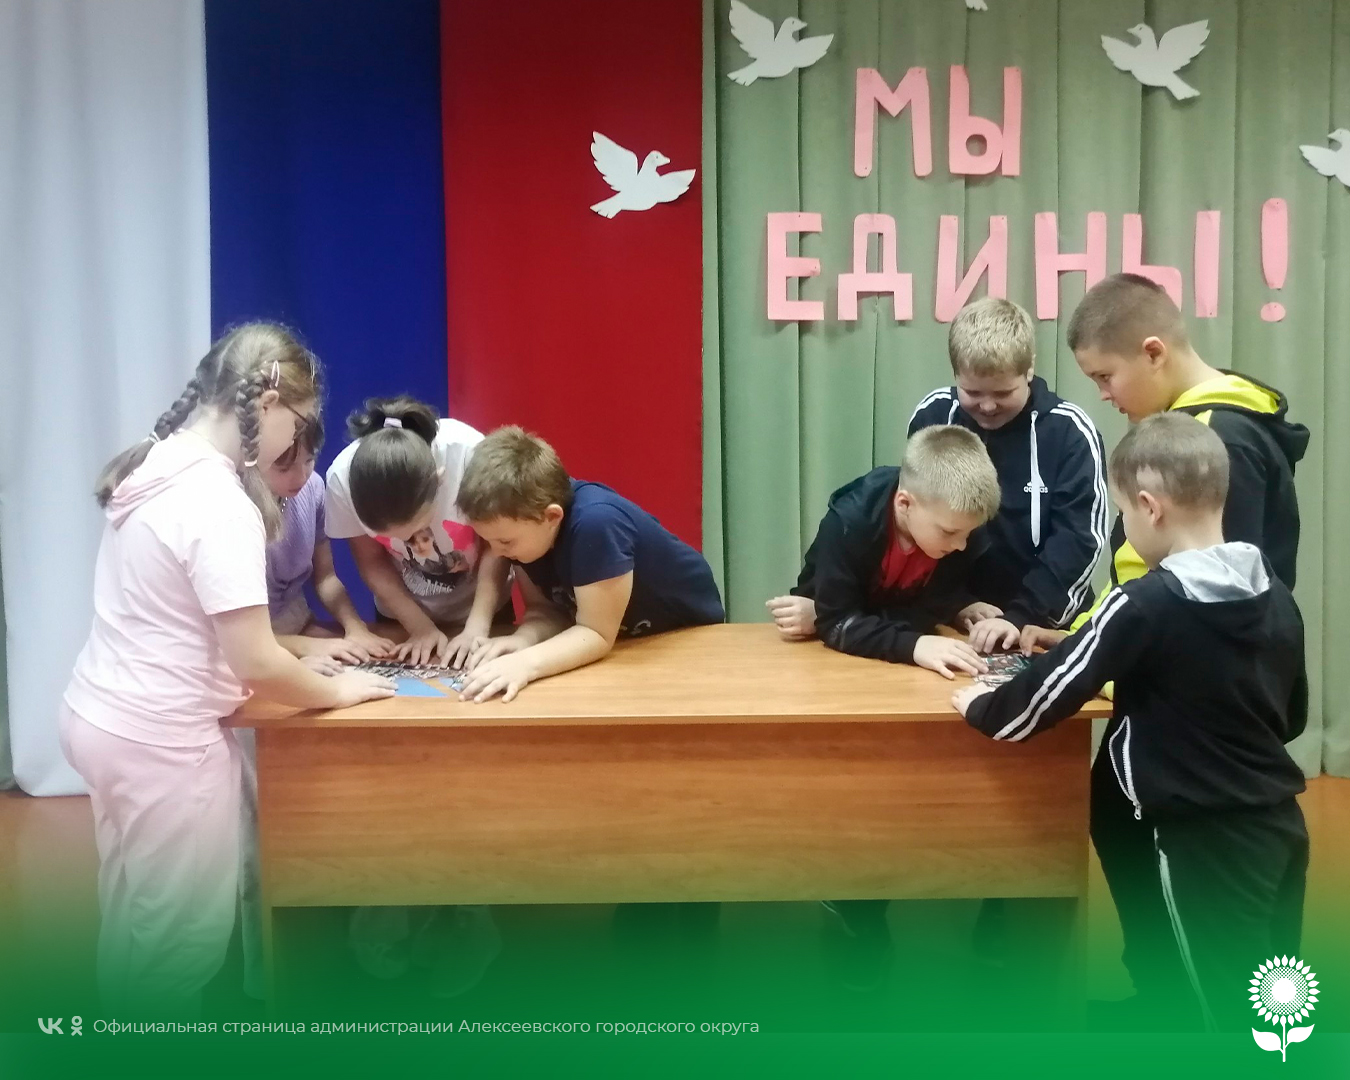 Ко Дню народного единства в селе Жуково прошли историко-патриотические мероприятия.